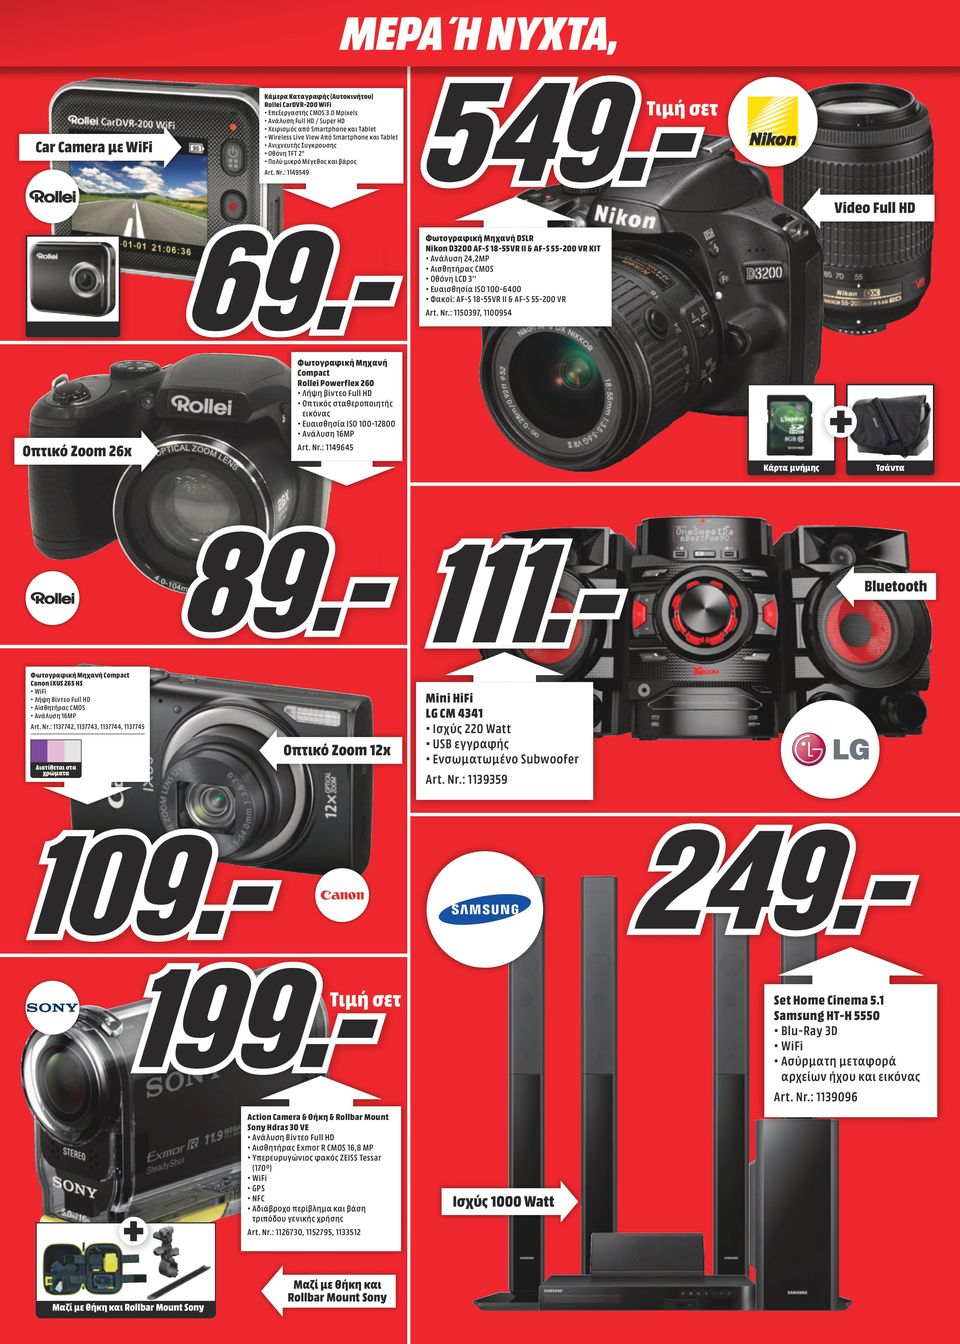 : 1149549 Video Full HD Φωτογραφική Μηχανή DSLR Nikon D3200 AF-S 18-55VR II & AF-S 55-200 VR KIT Ανάλυση 24,2MP Aισθητήρας CMOS Οθόνη LCD 3'' Eυαισθησία ISO 100-6400 Φακοί: AF-S 18-55VR II & AF-S